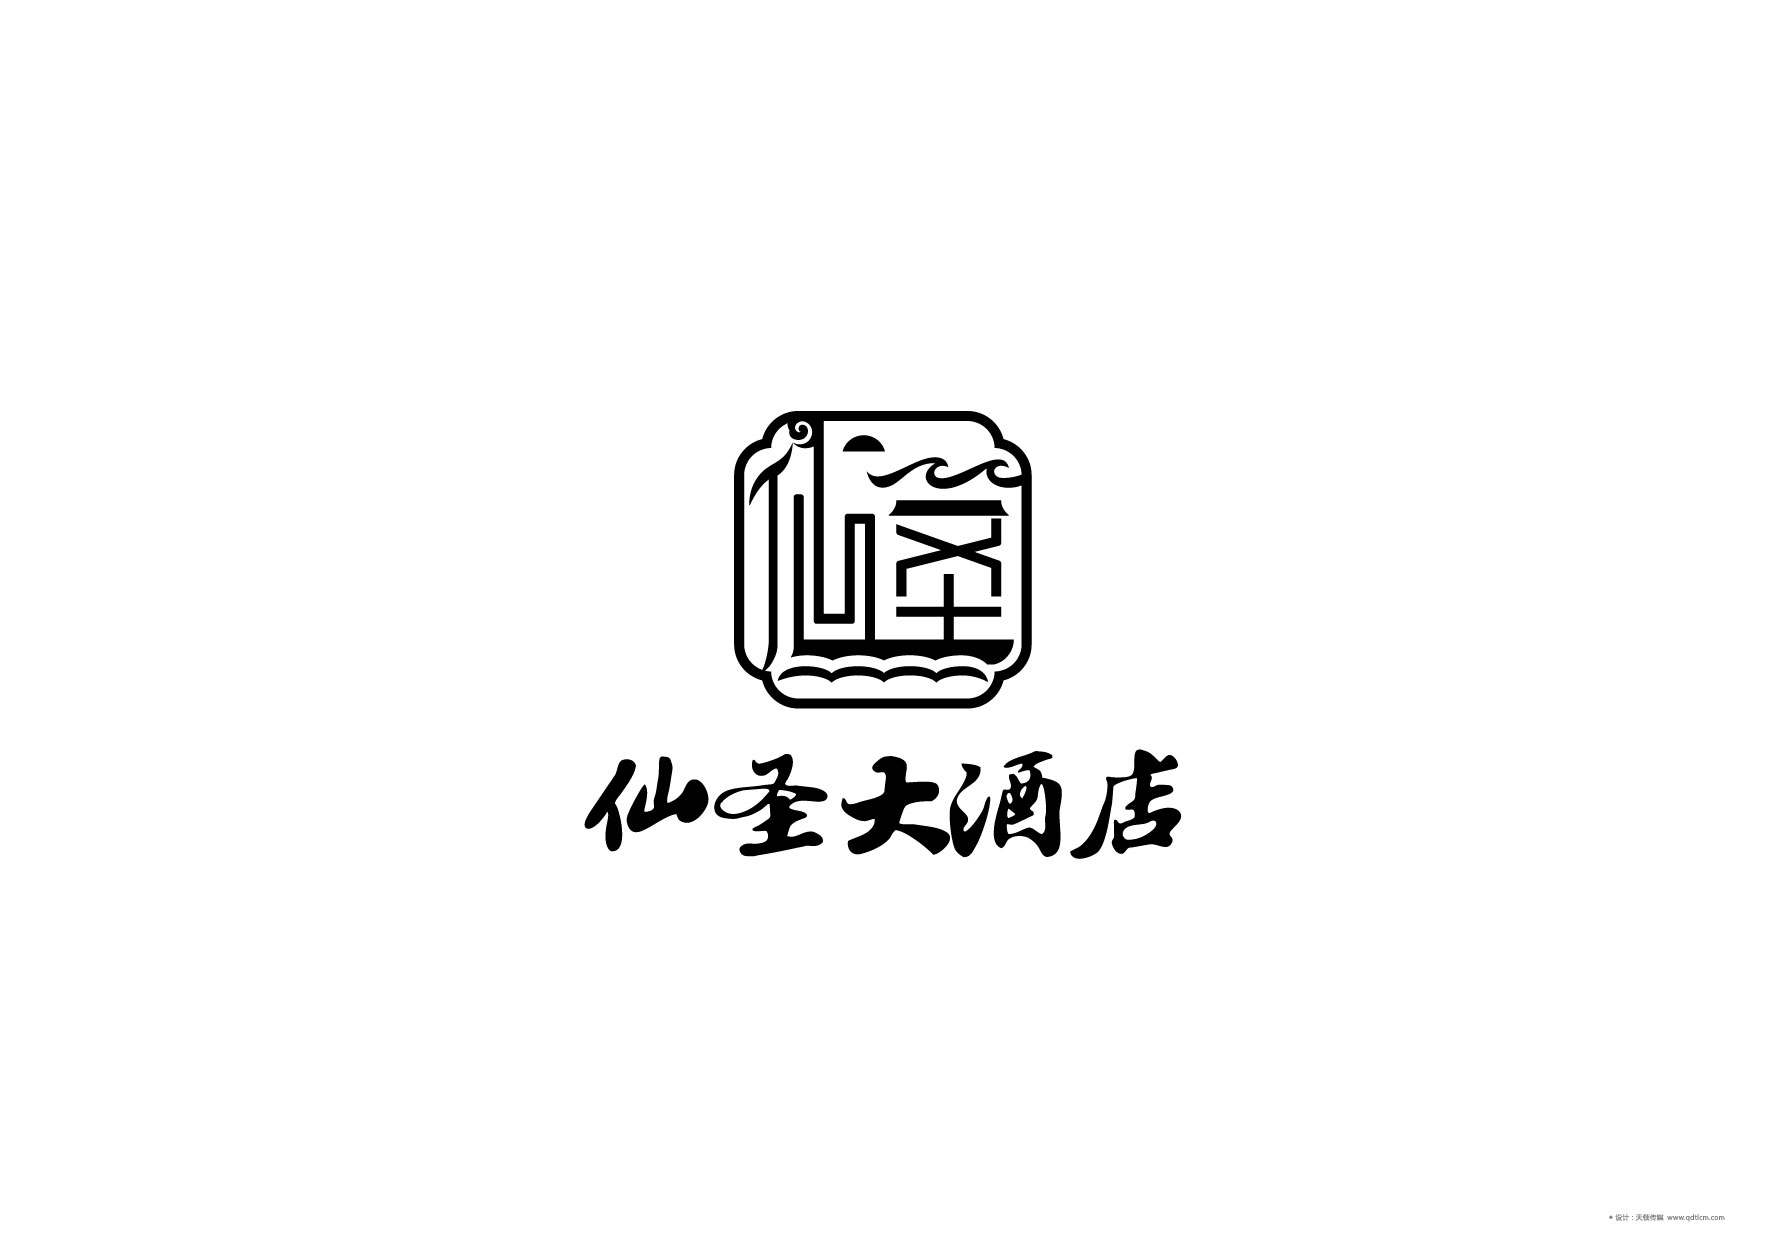 仙圣大酒店标志定稿-04.jpg